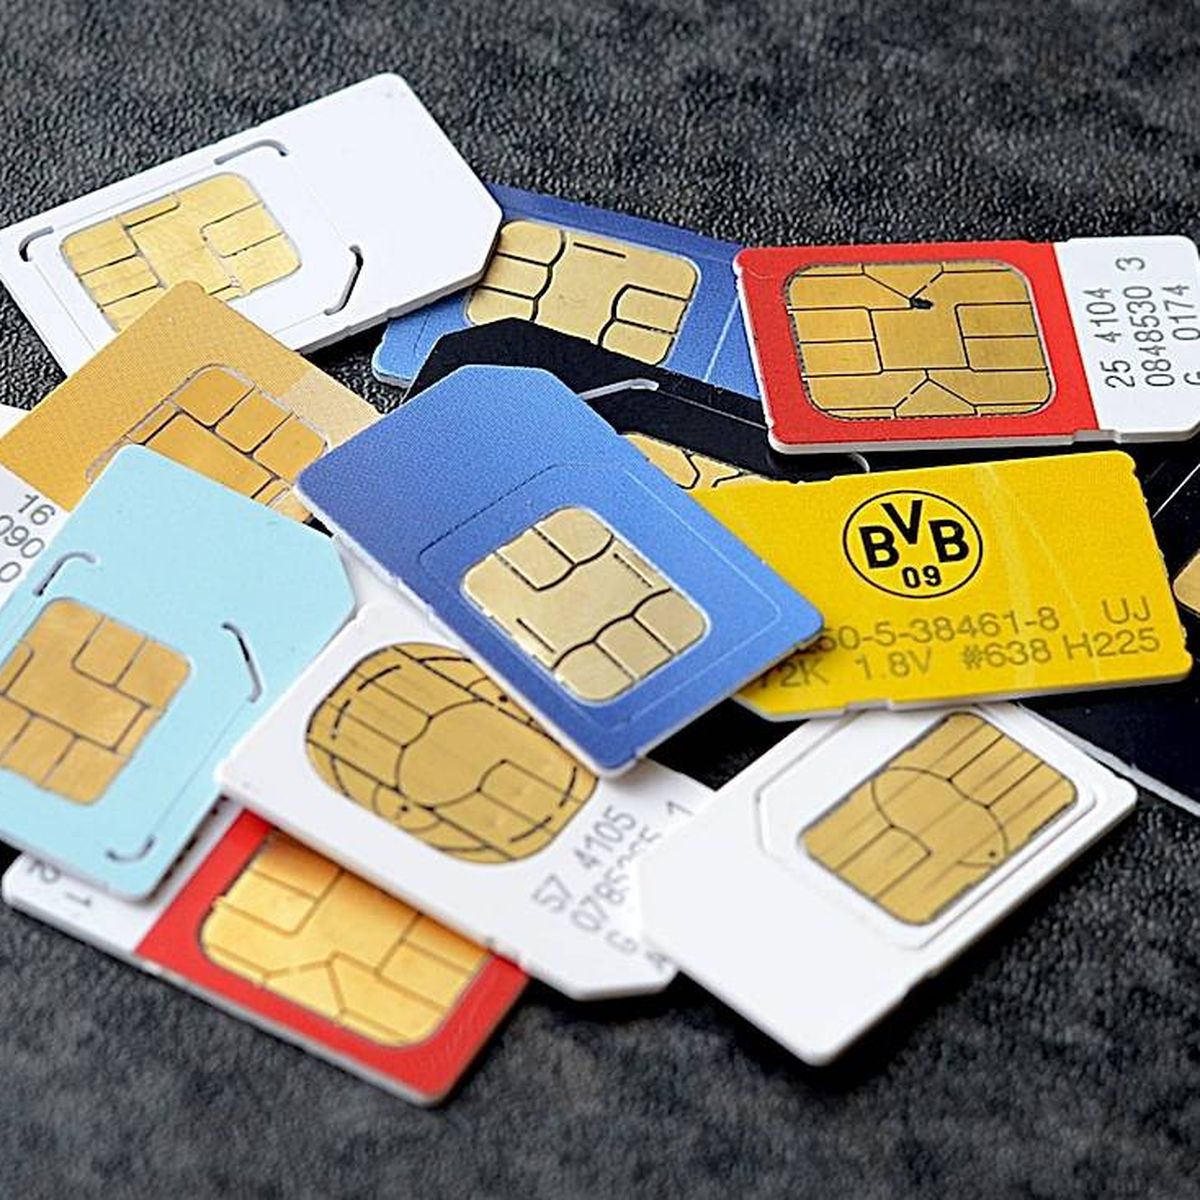 Las mejores ofertas en Corte Triple prepago tarjetas SIM para teléfonos  celulares